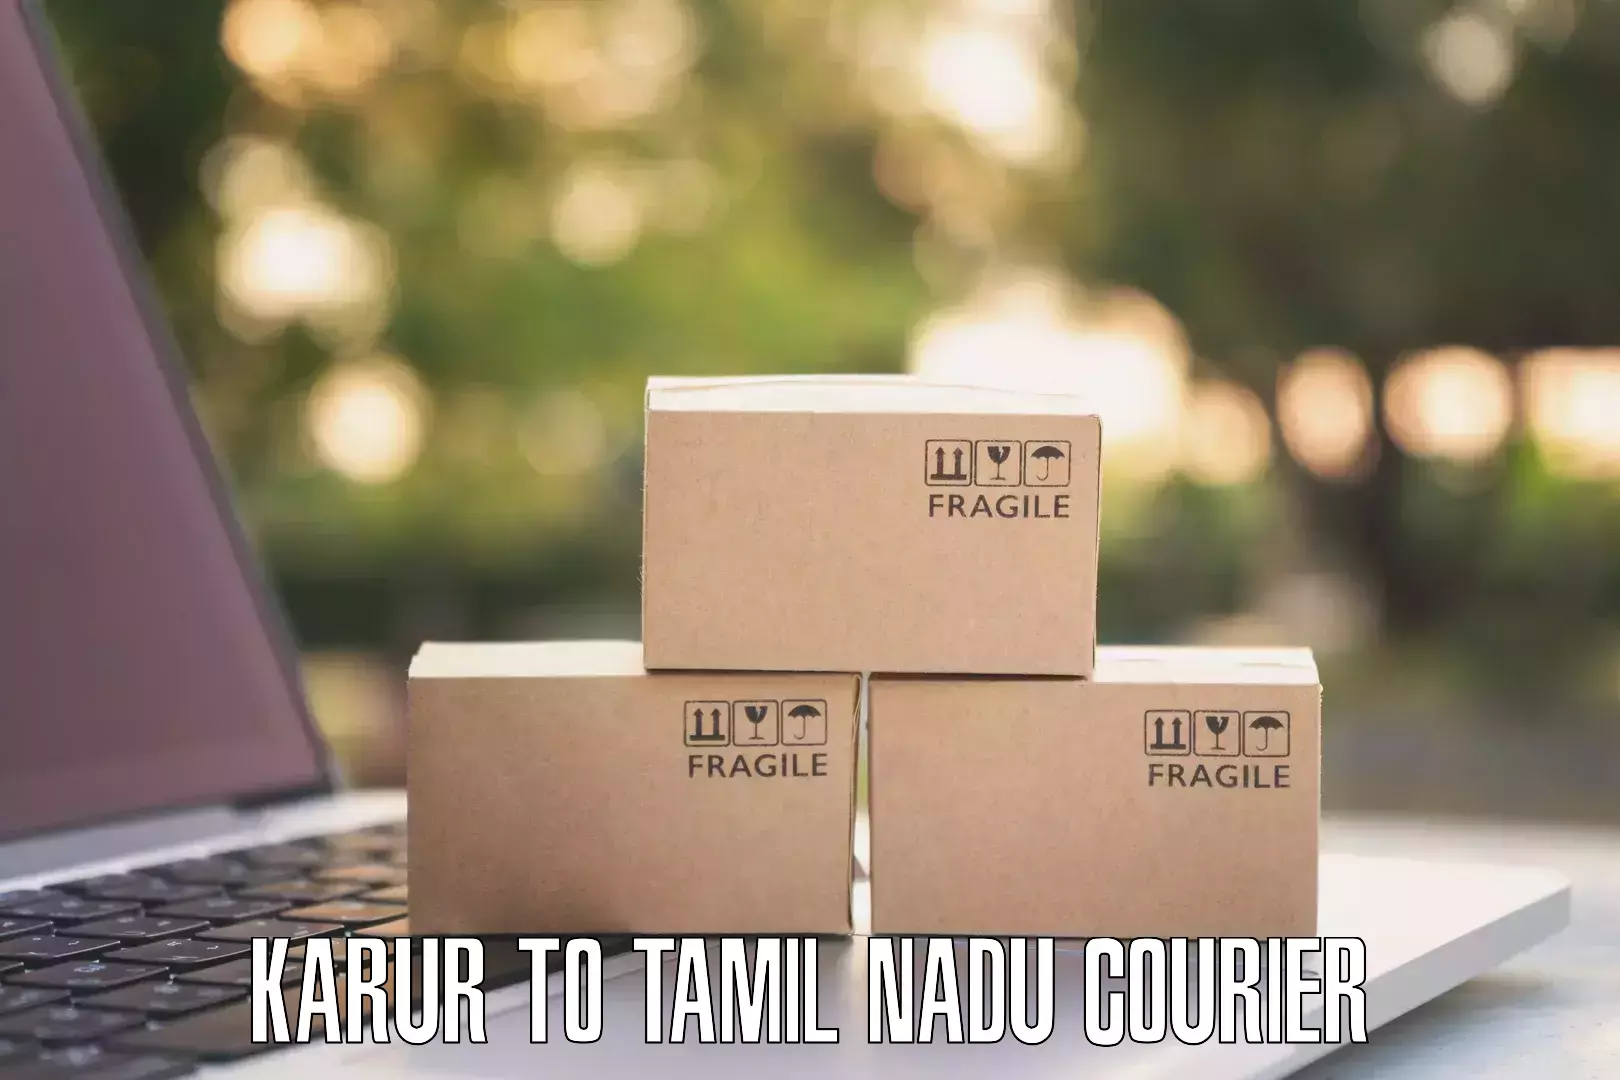 Global courier networks Karur to Tirukalukundram